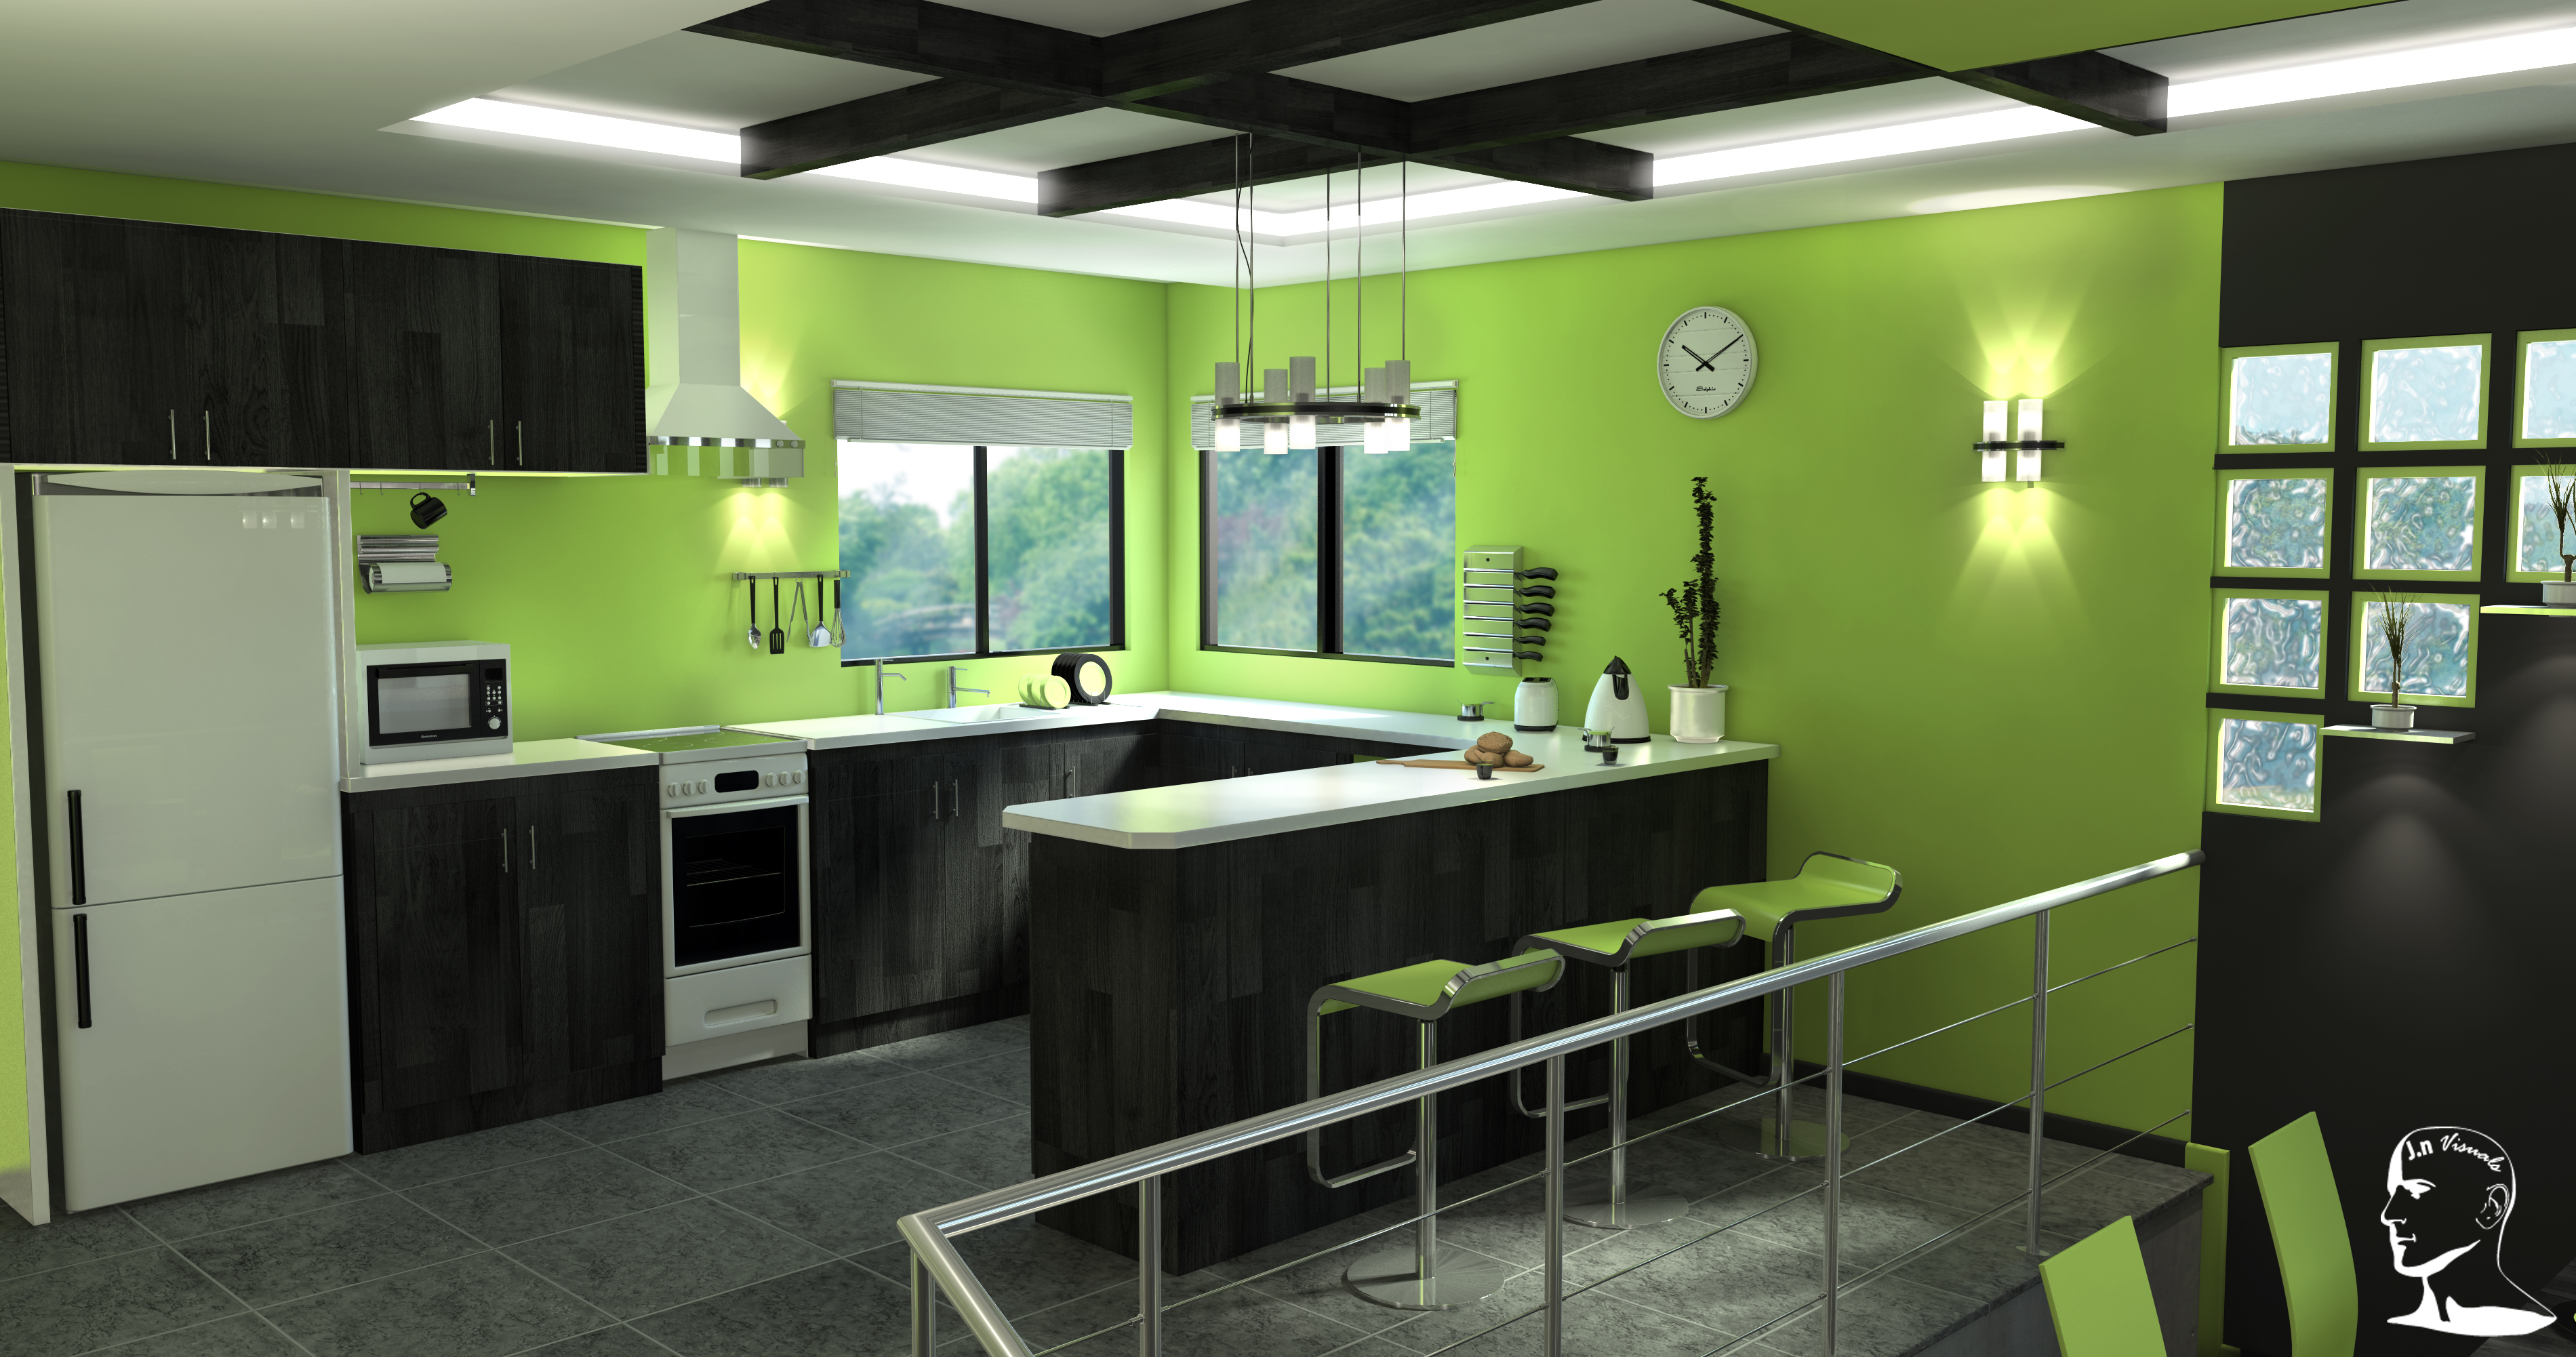 Зеленые обои на кухне. Кухня в зеленых тонах. Кухня зеленого цвета. Интерьер кухни в зеленых тонах. Салатовые стены на кухне.